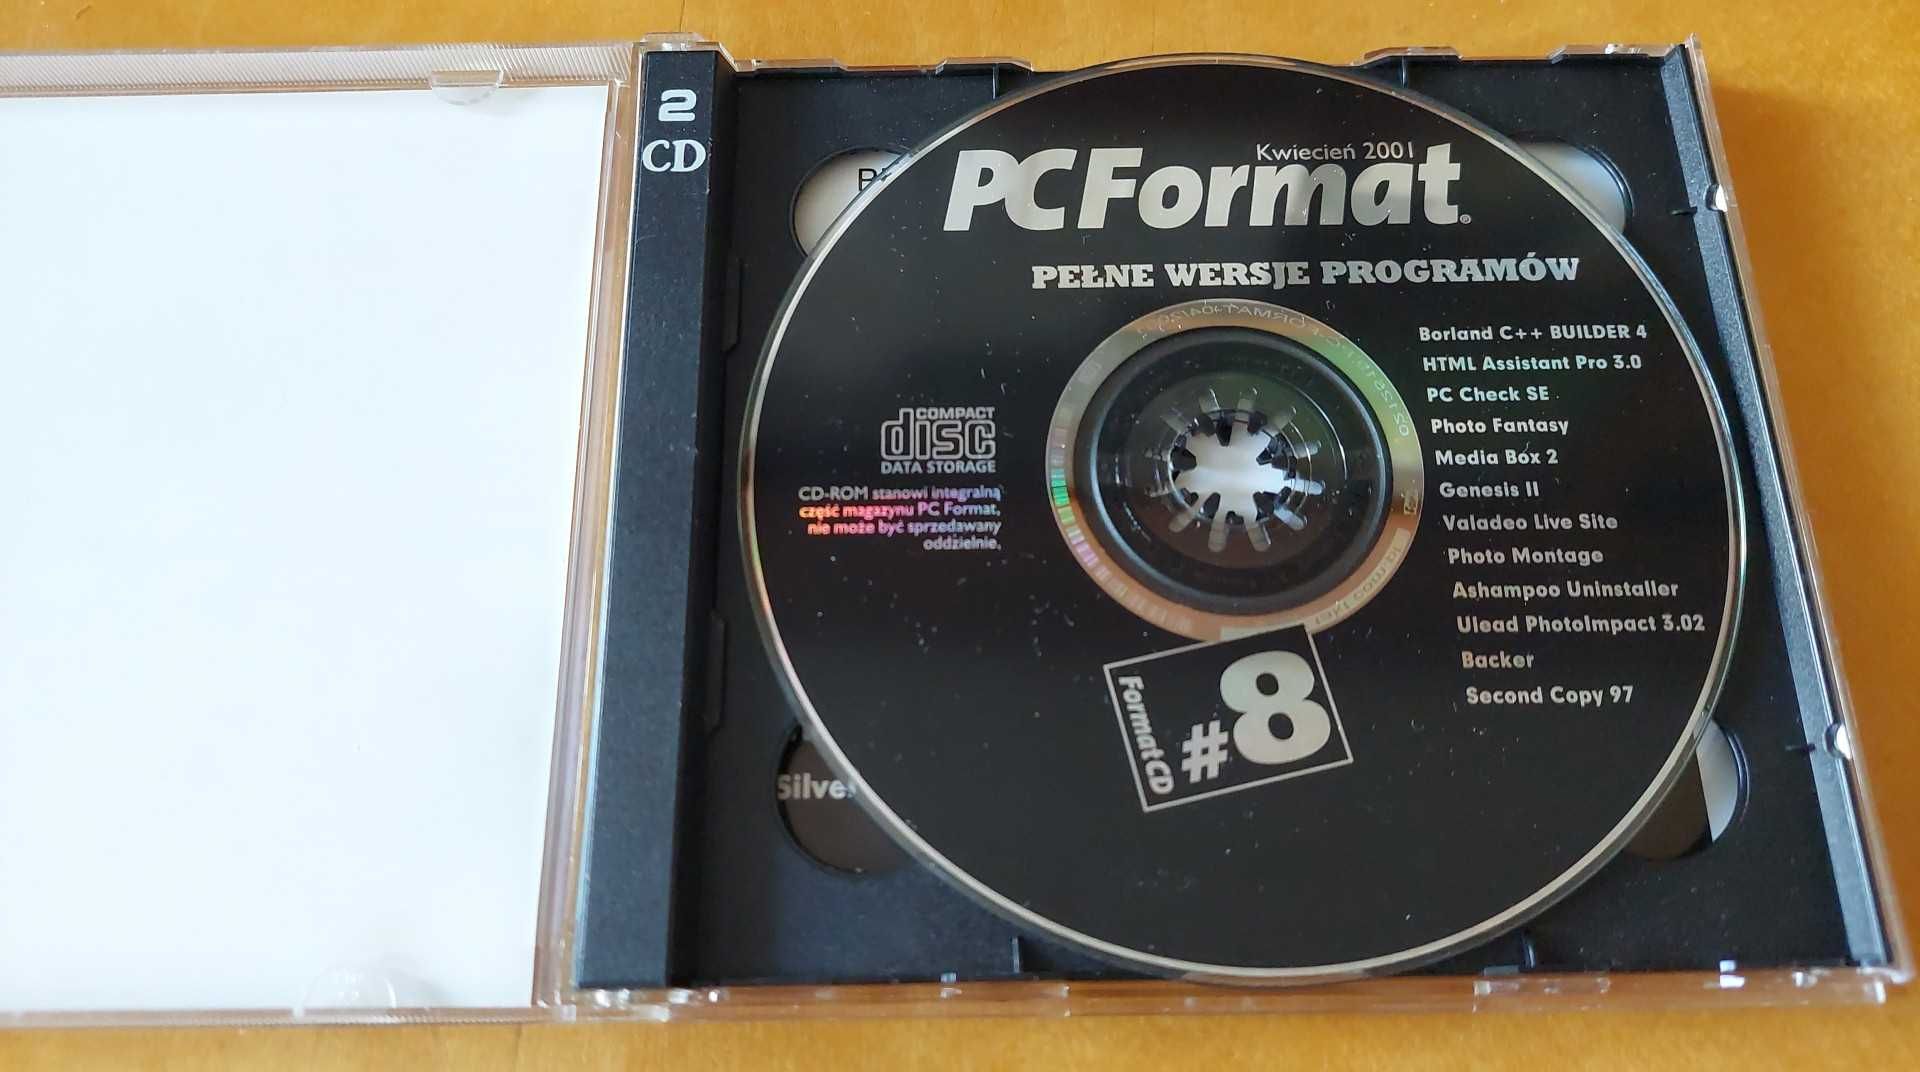 PC Format Kwiecień 2001 2 x CD